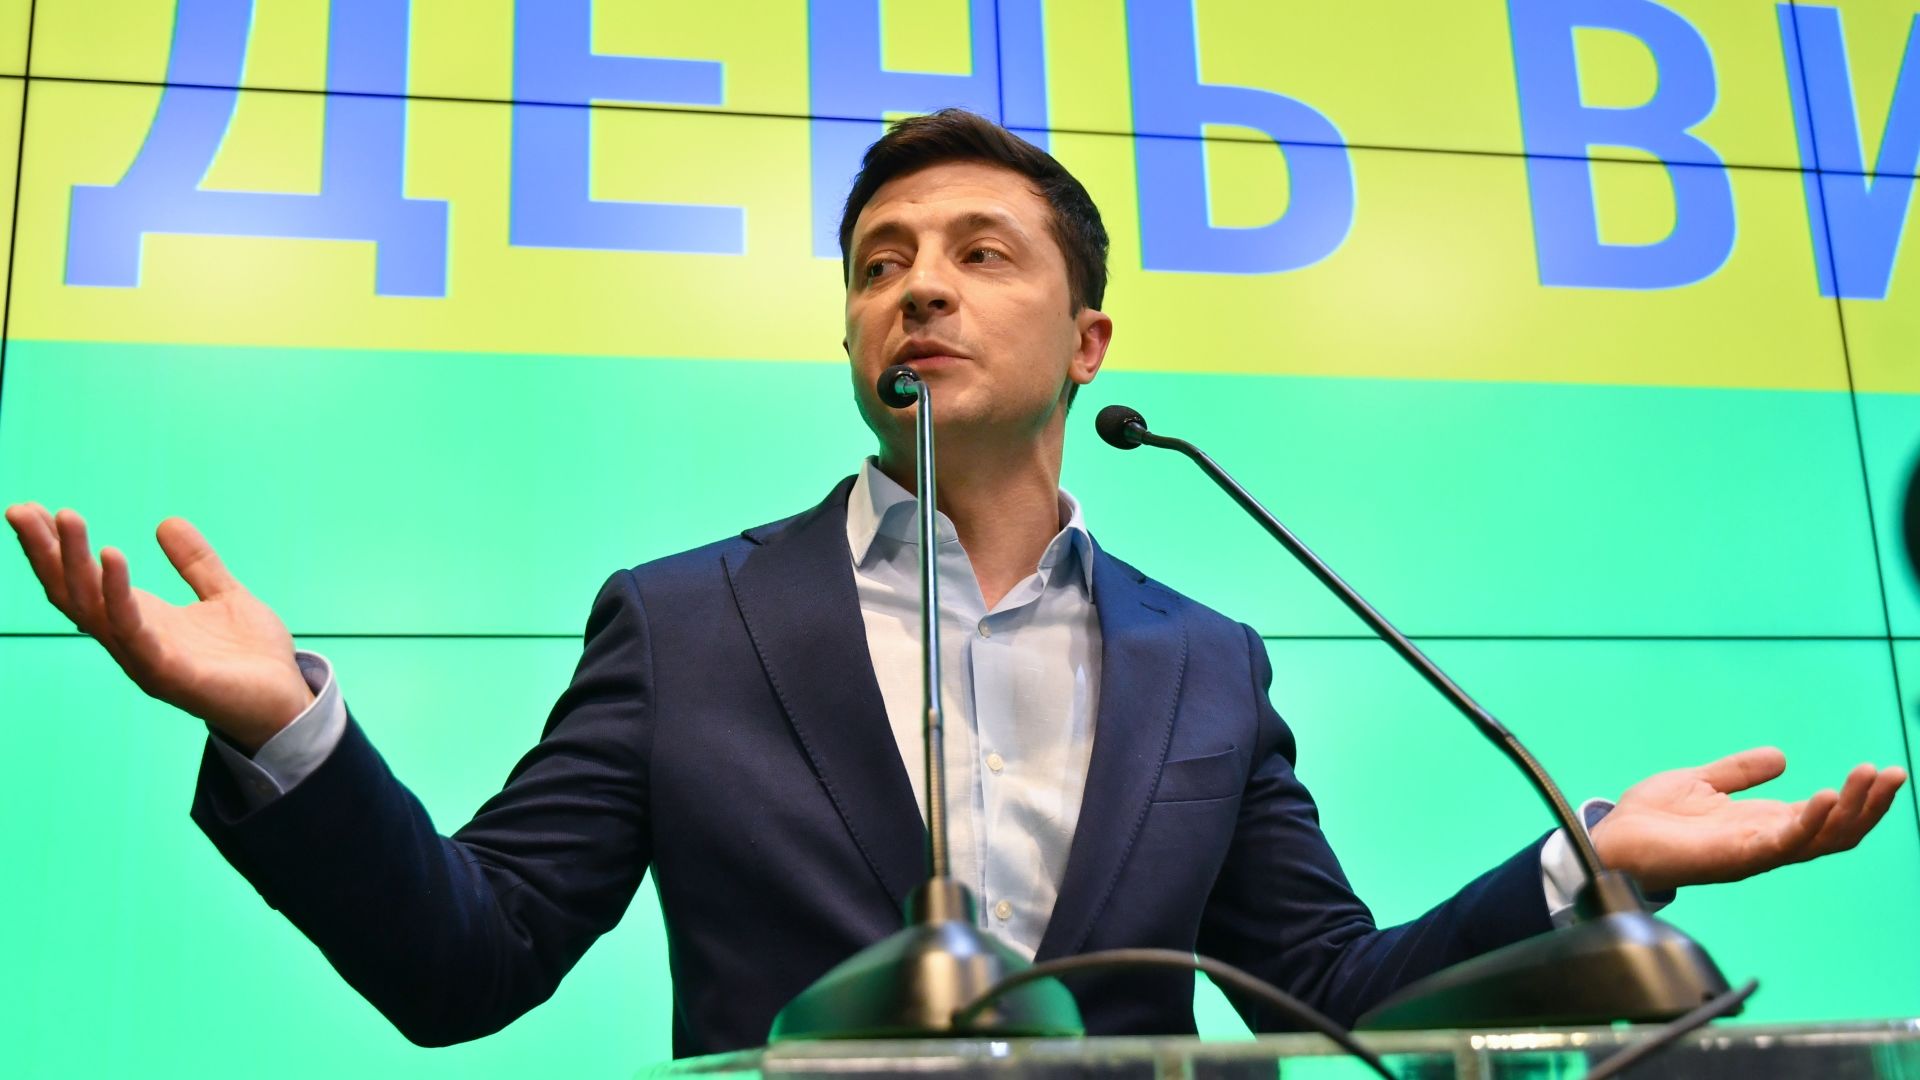 Halogatja az ukrán parlament Zelenszkij beiktatását